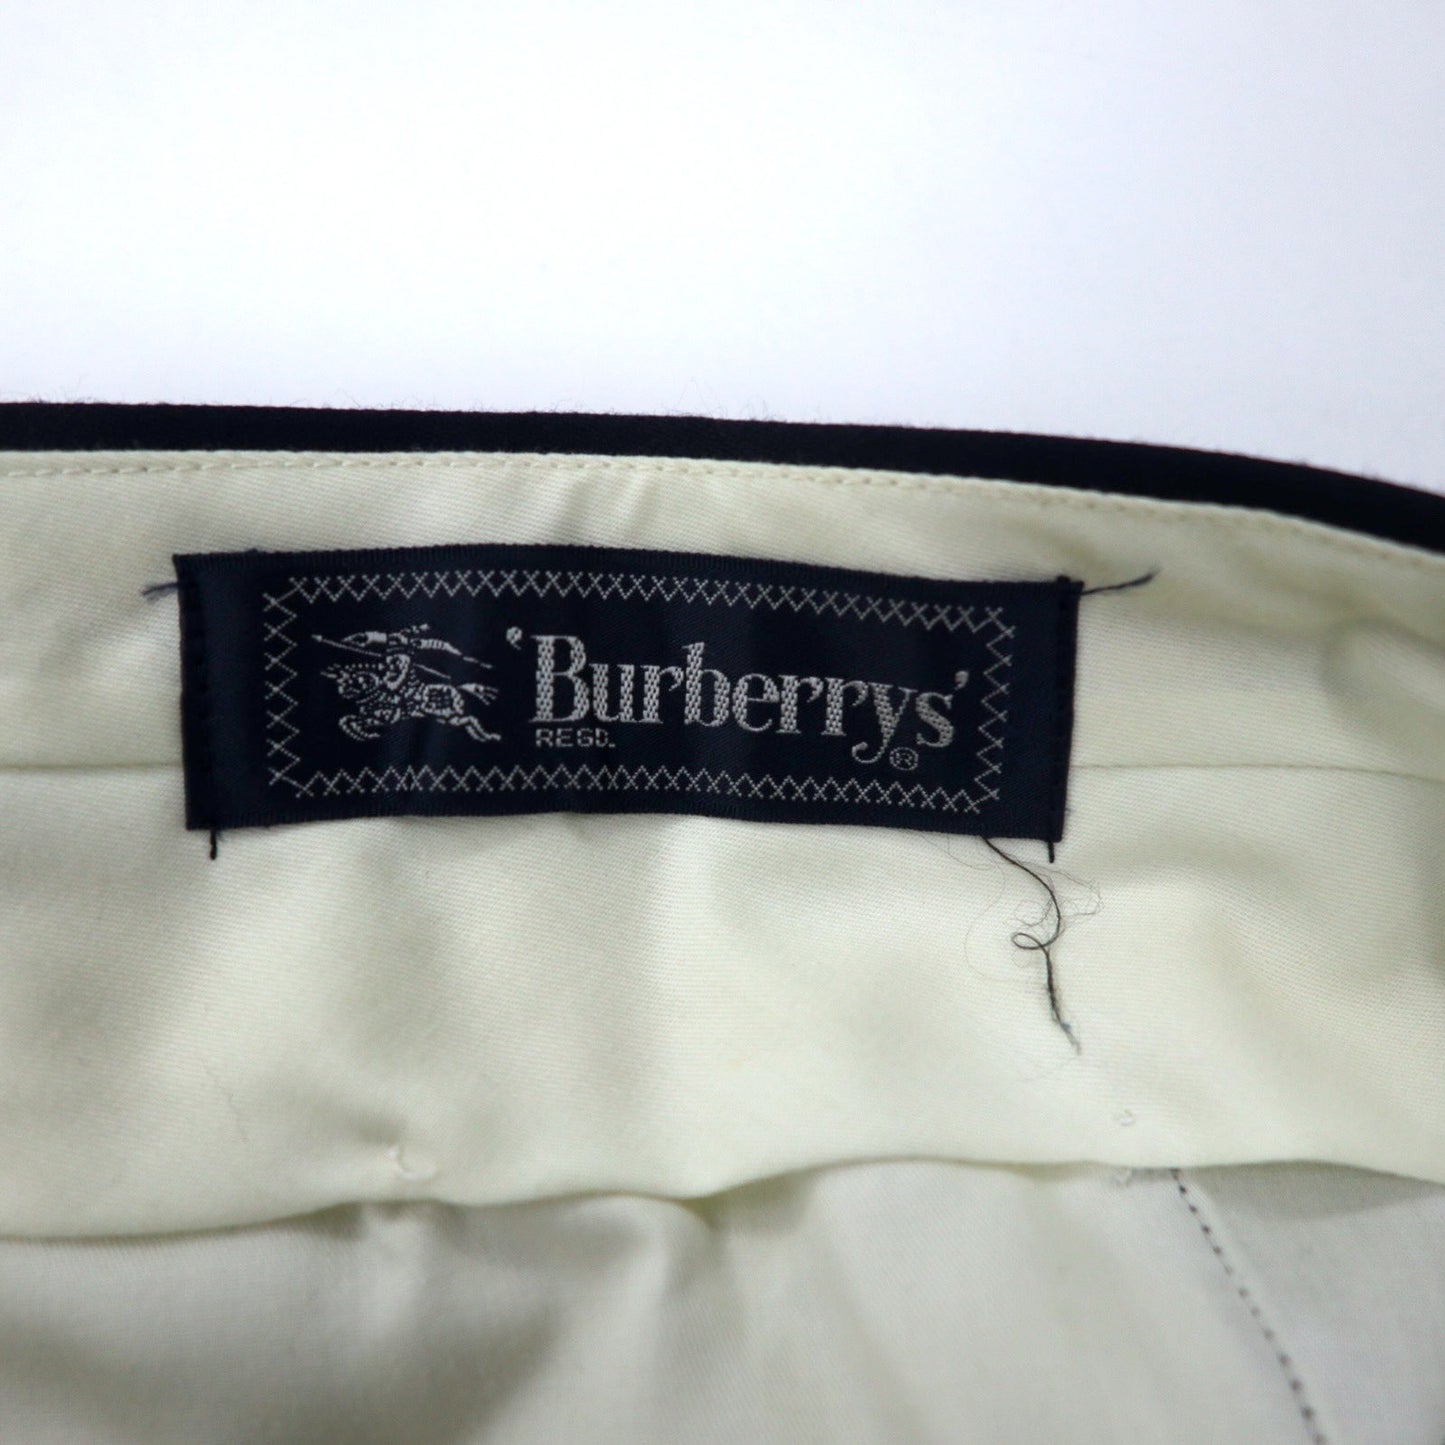 Burberrys オールド ダブル スーツ セットアップ 94-82-175 A6 ネイビー ストライプ ウール 日本製